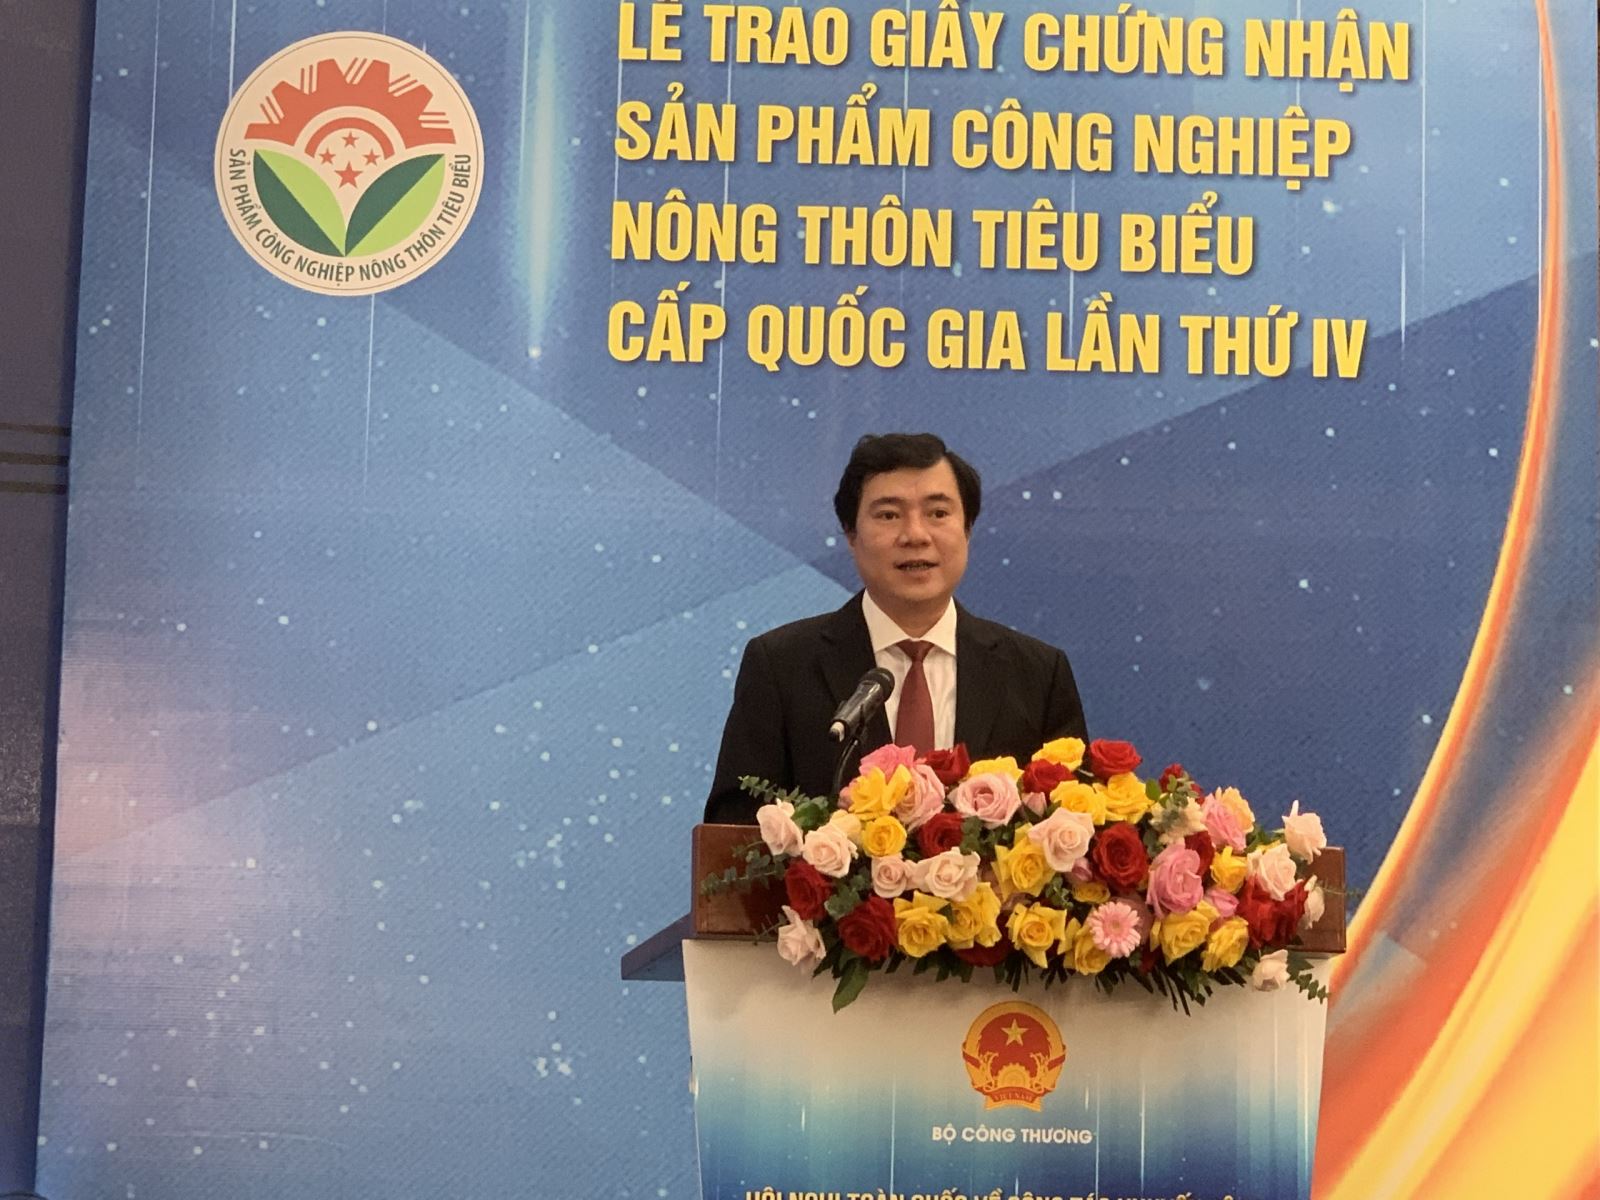 Thứ trưởng Bộ Công thương Nguyễn Sinh Nhật Tân phát biểu tại Hội nghị. Ảnh: Minh Trang